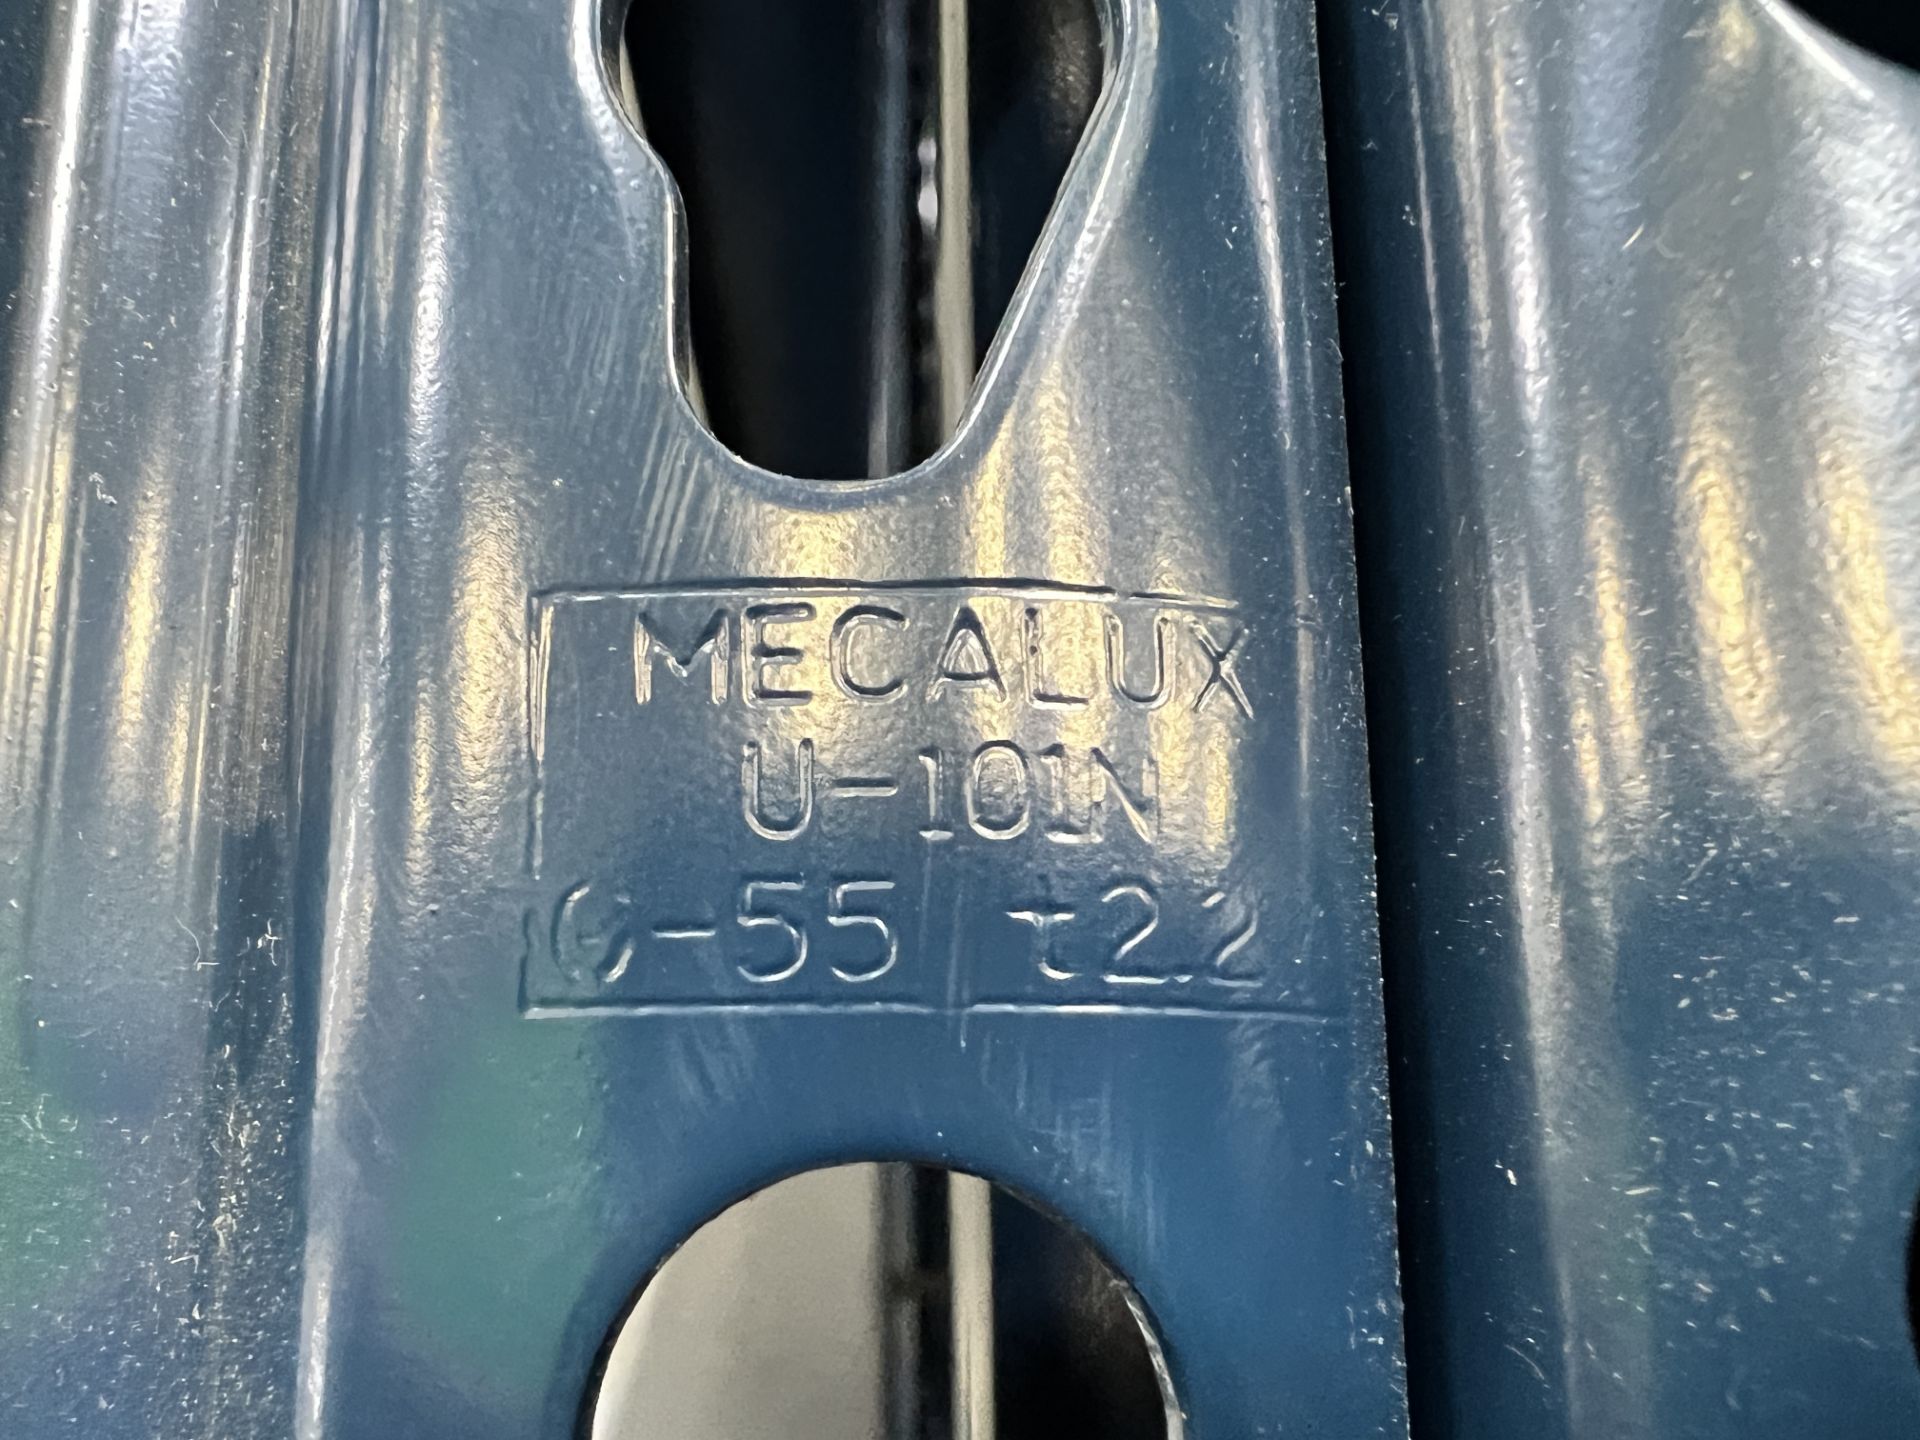 Mecalux Tear Drop Pallet Rack Upright Frame 42" x 28' - Image 11 of 11